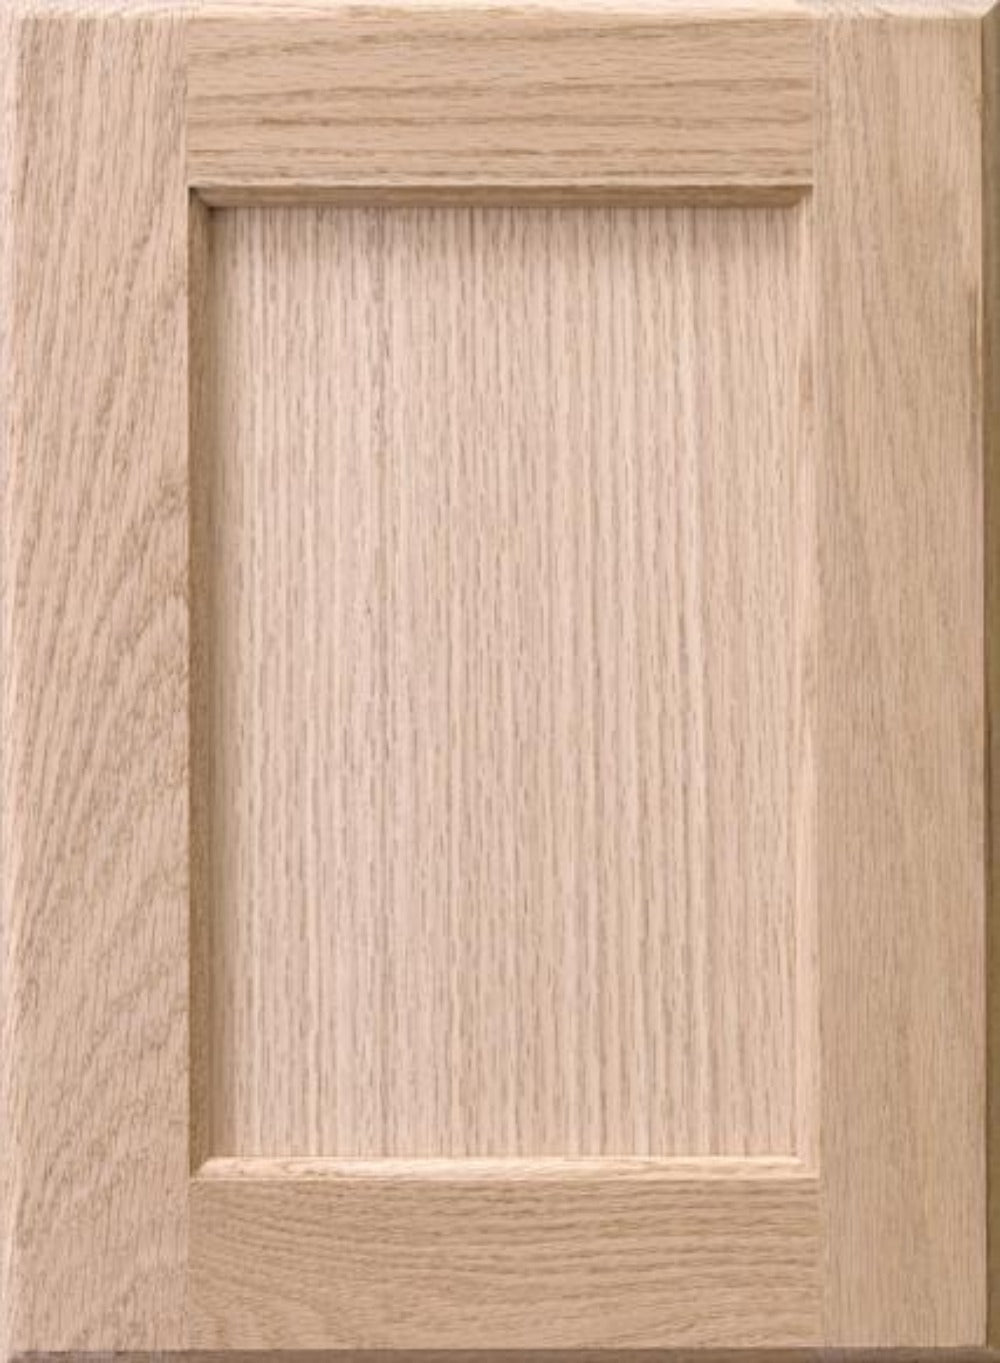 Raised Panel Wood Cabinet Door